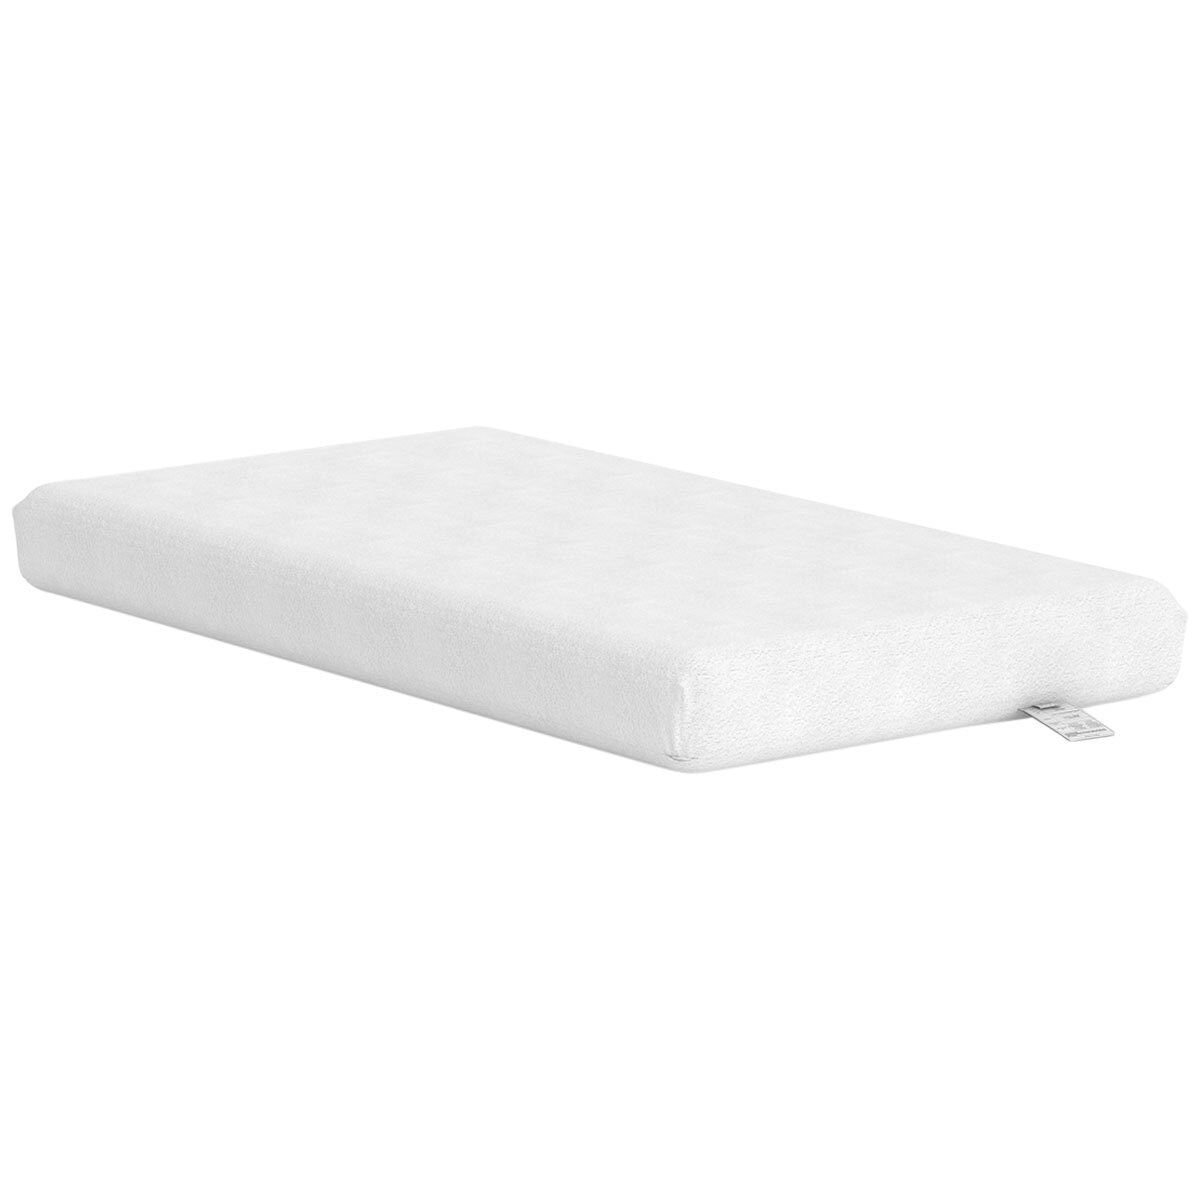 Boori Foam Cot Bed Mattress 132cm x 70cm x 8cm